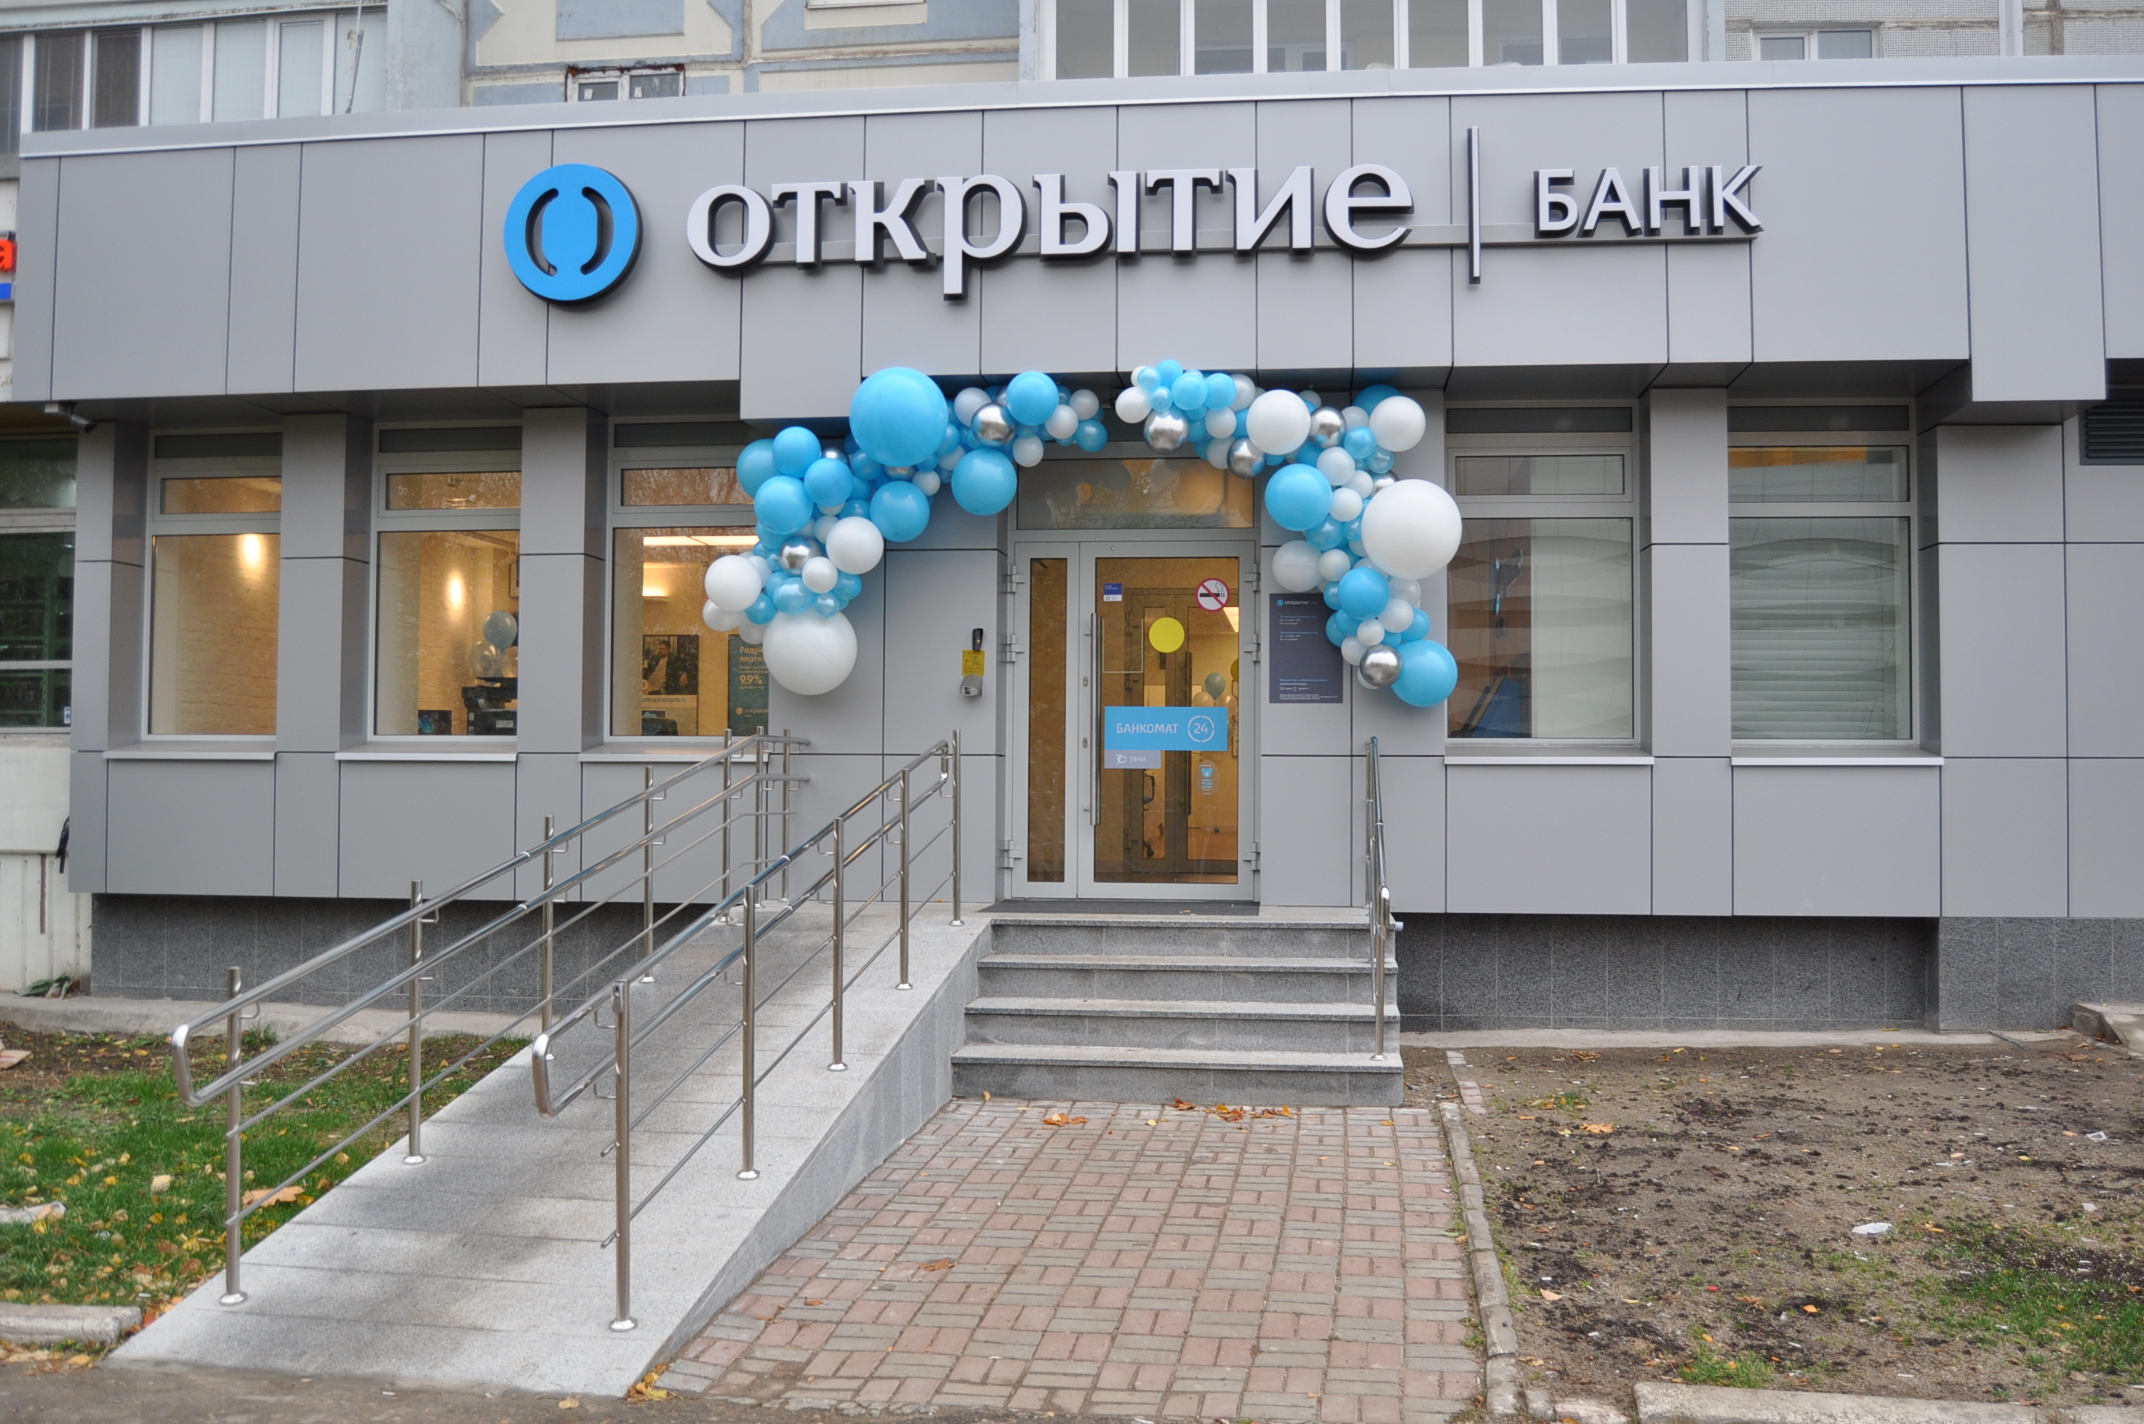 Банк «Открытие» презентовал еще один новый офис современного формата